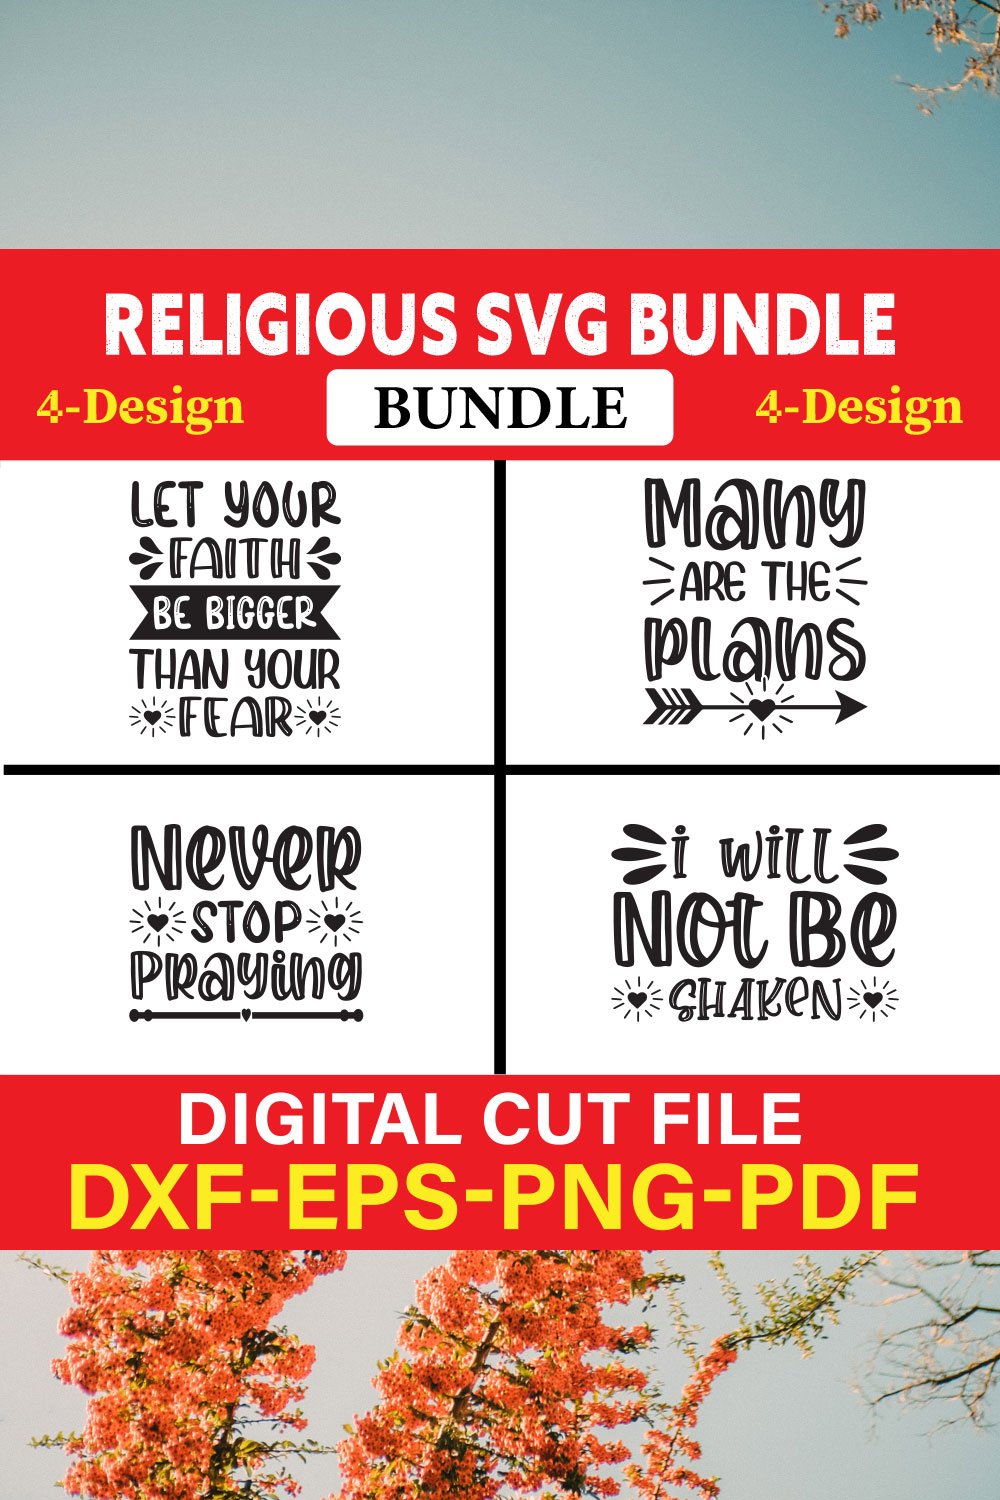 Religious T-shirt Design Bundle Vol-4 pinterest preview image.